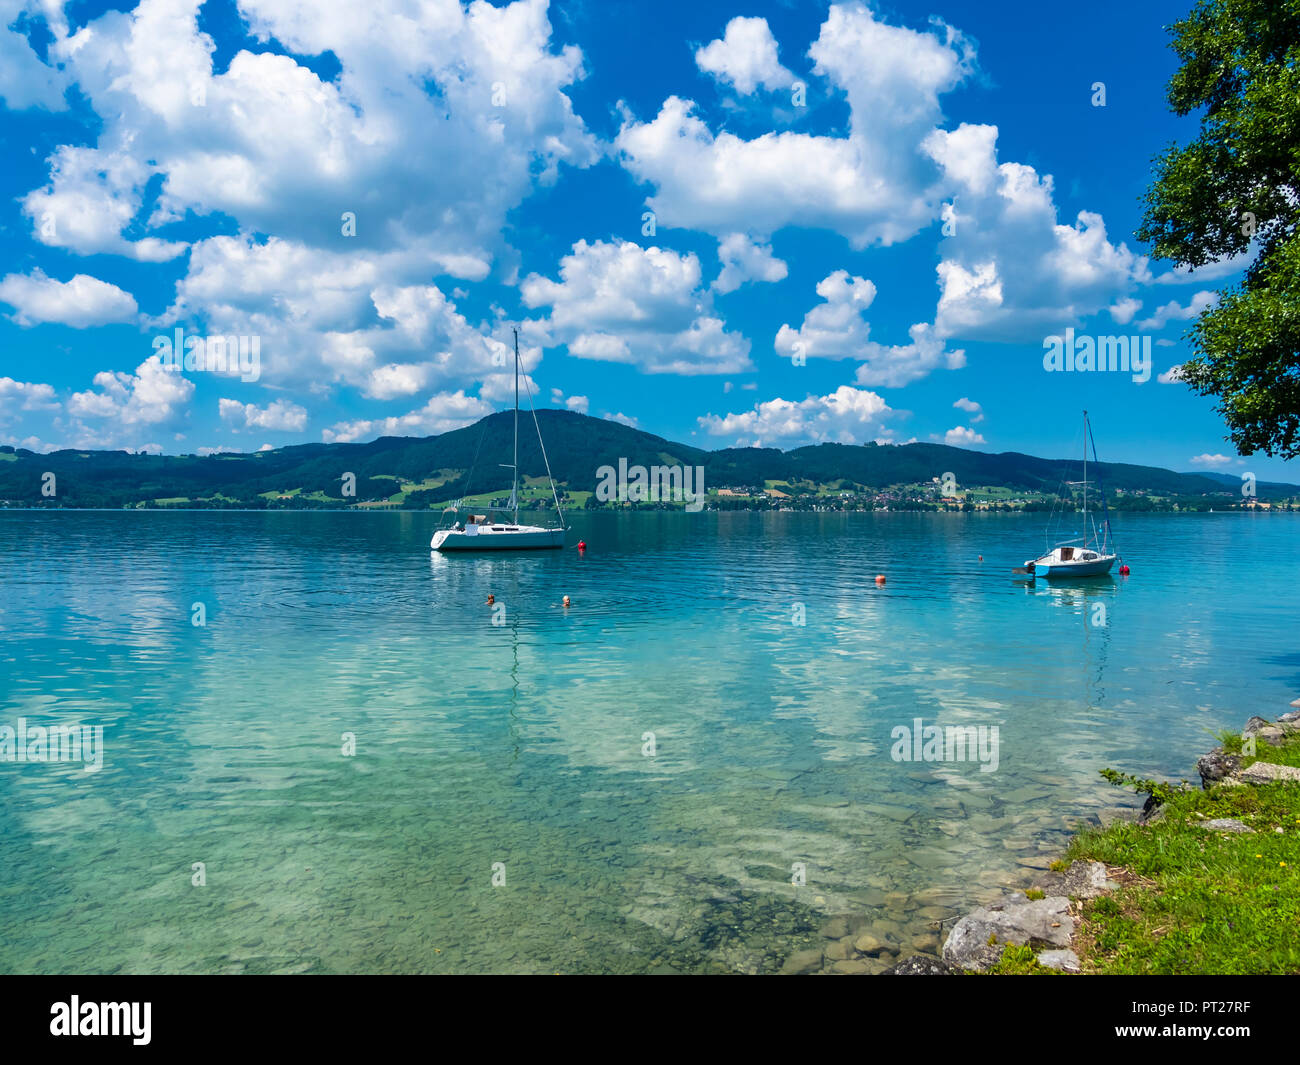 Austria, Salzkammergut, Boats on Lake Traunsee Stock Photo